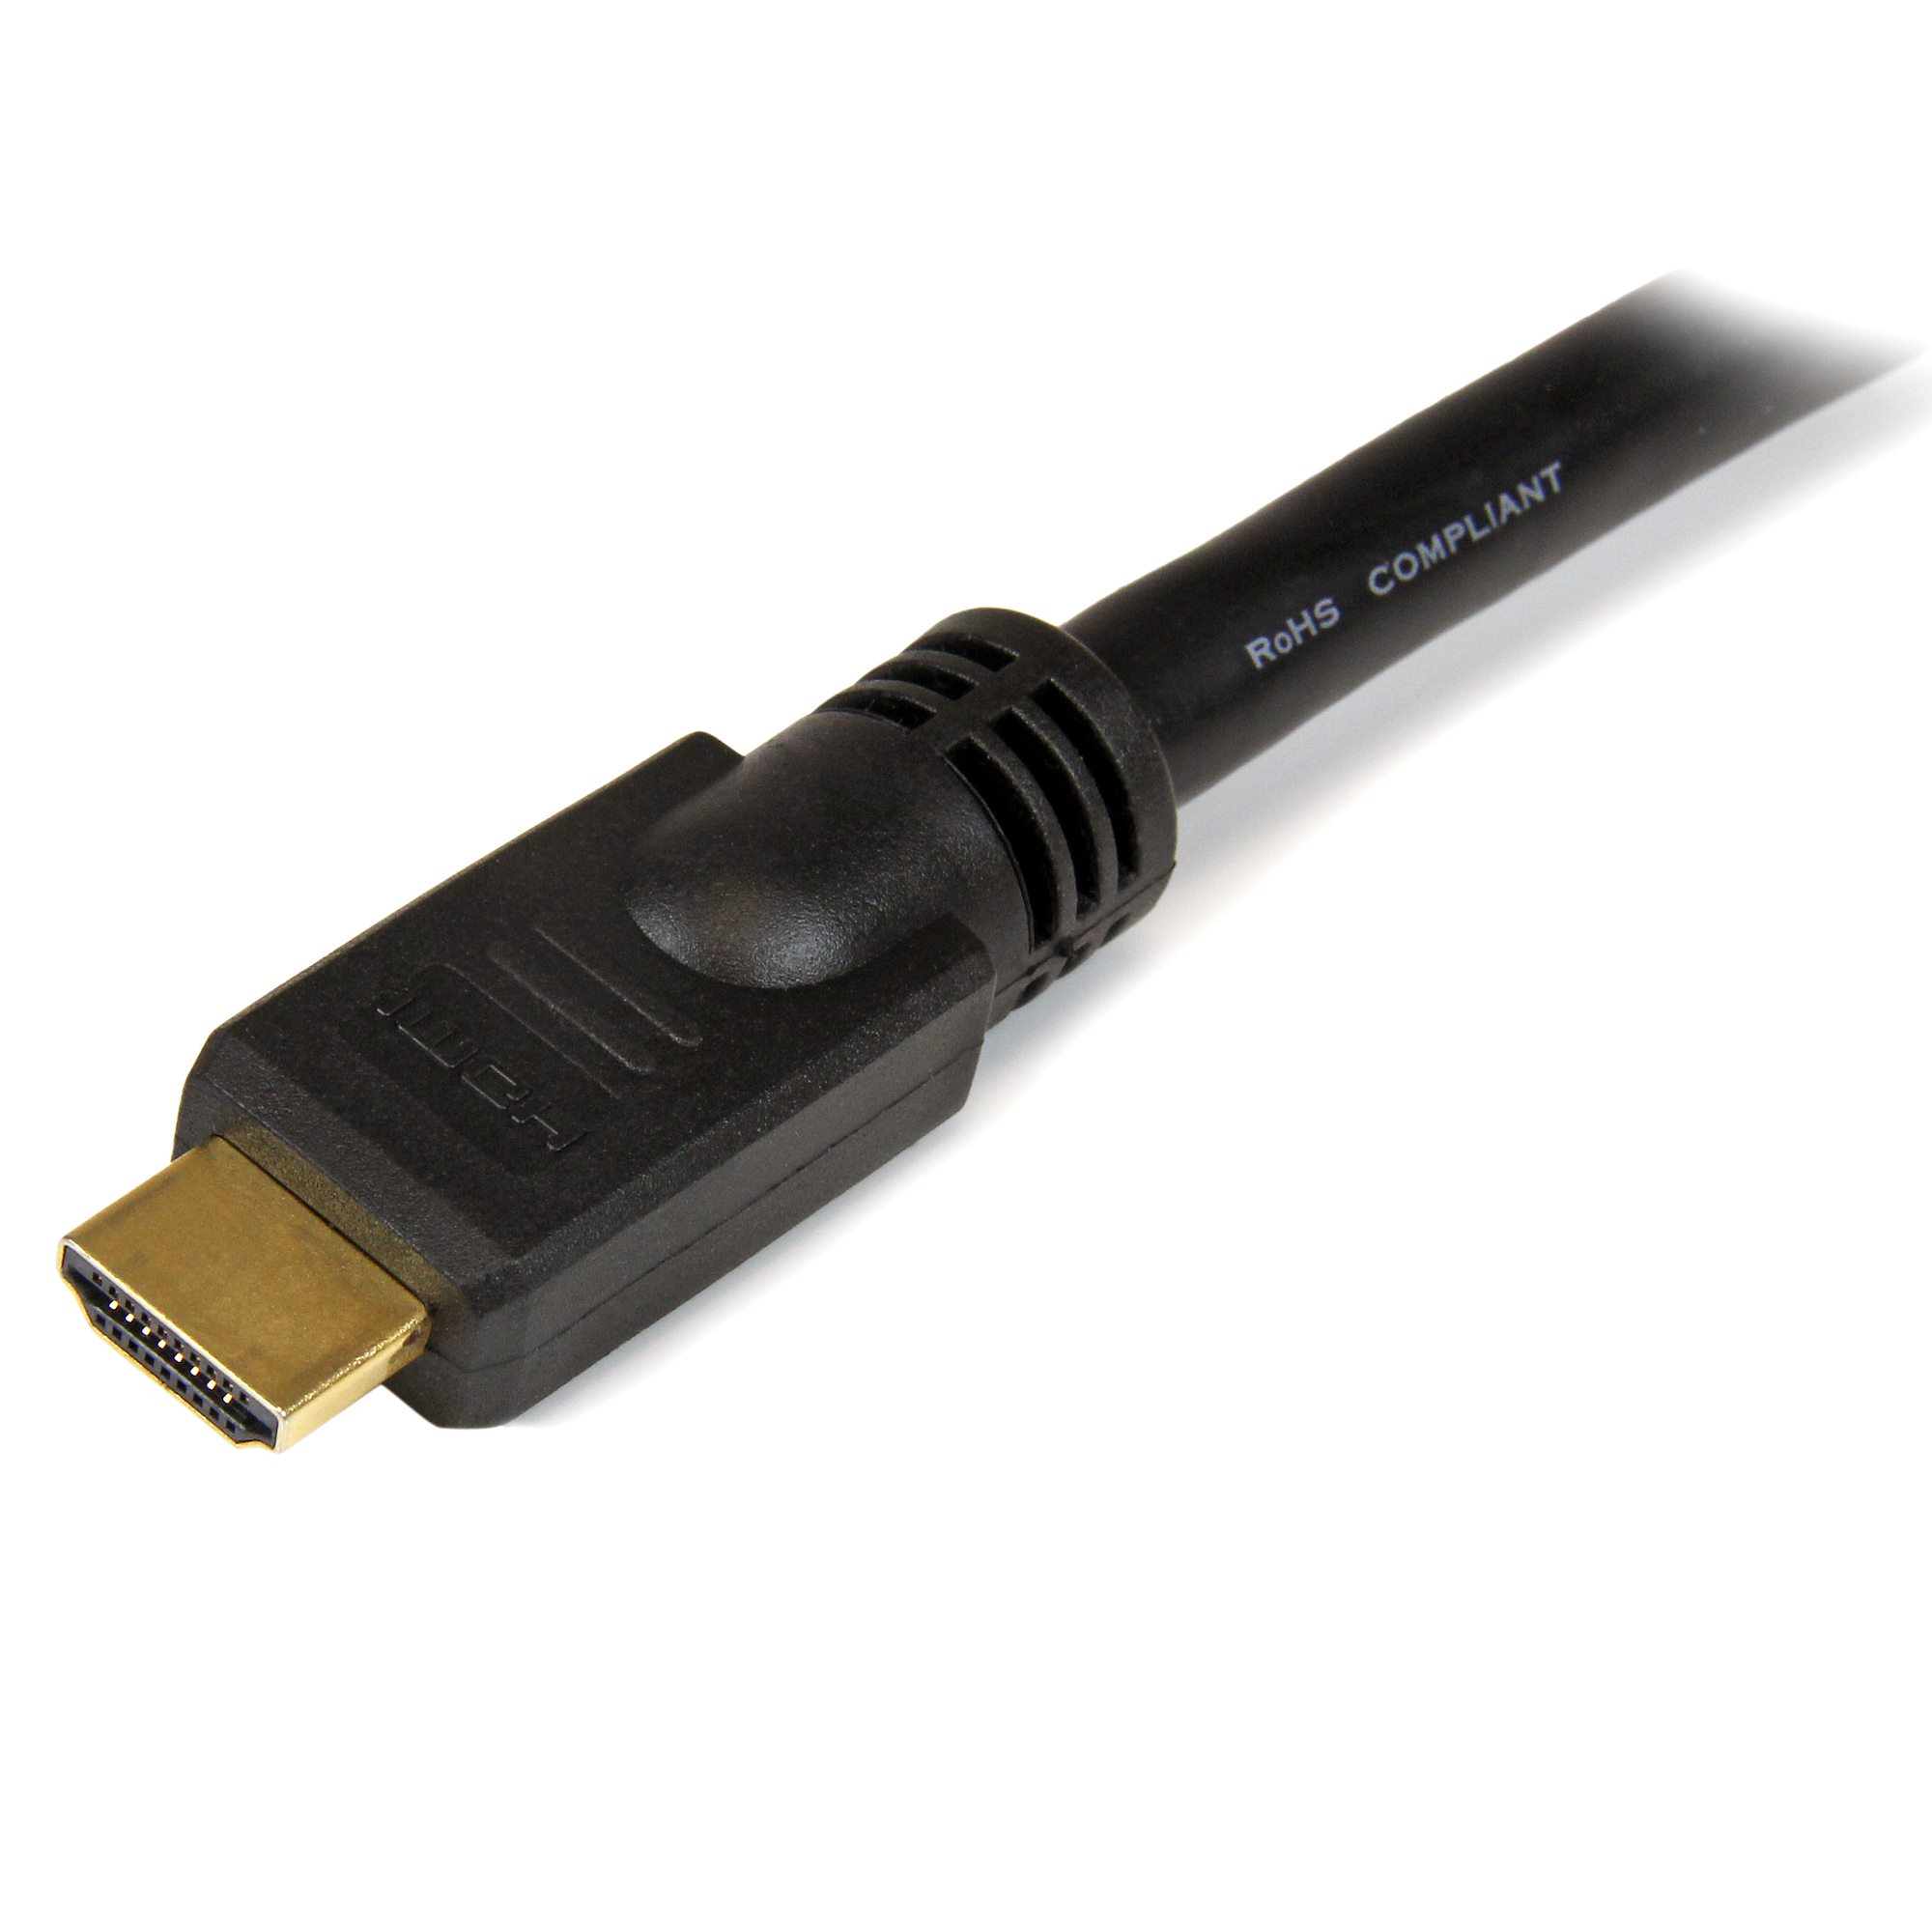 CABLE HDMI A HDMI 10 METROS – Mayoreo Mundo Innovacion